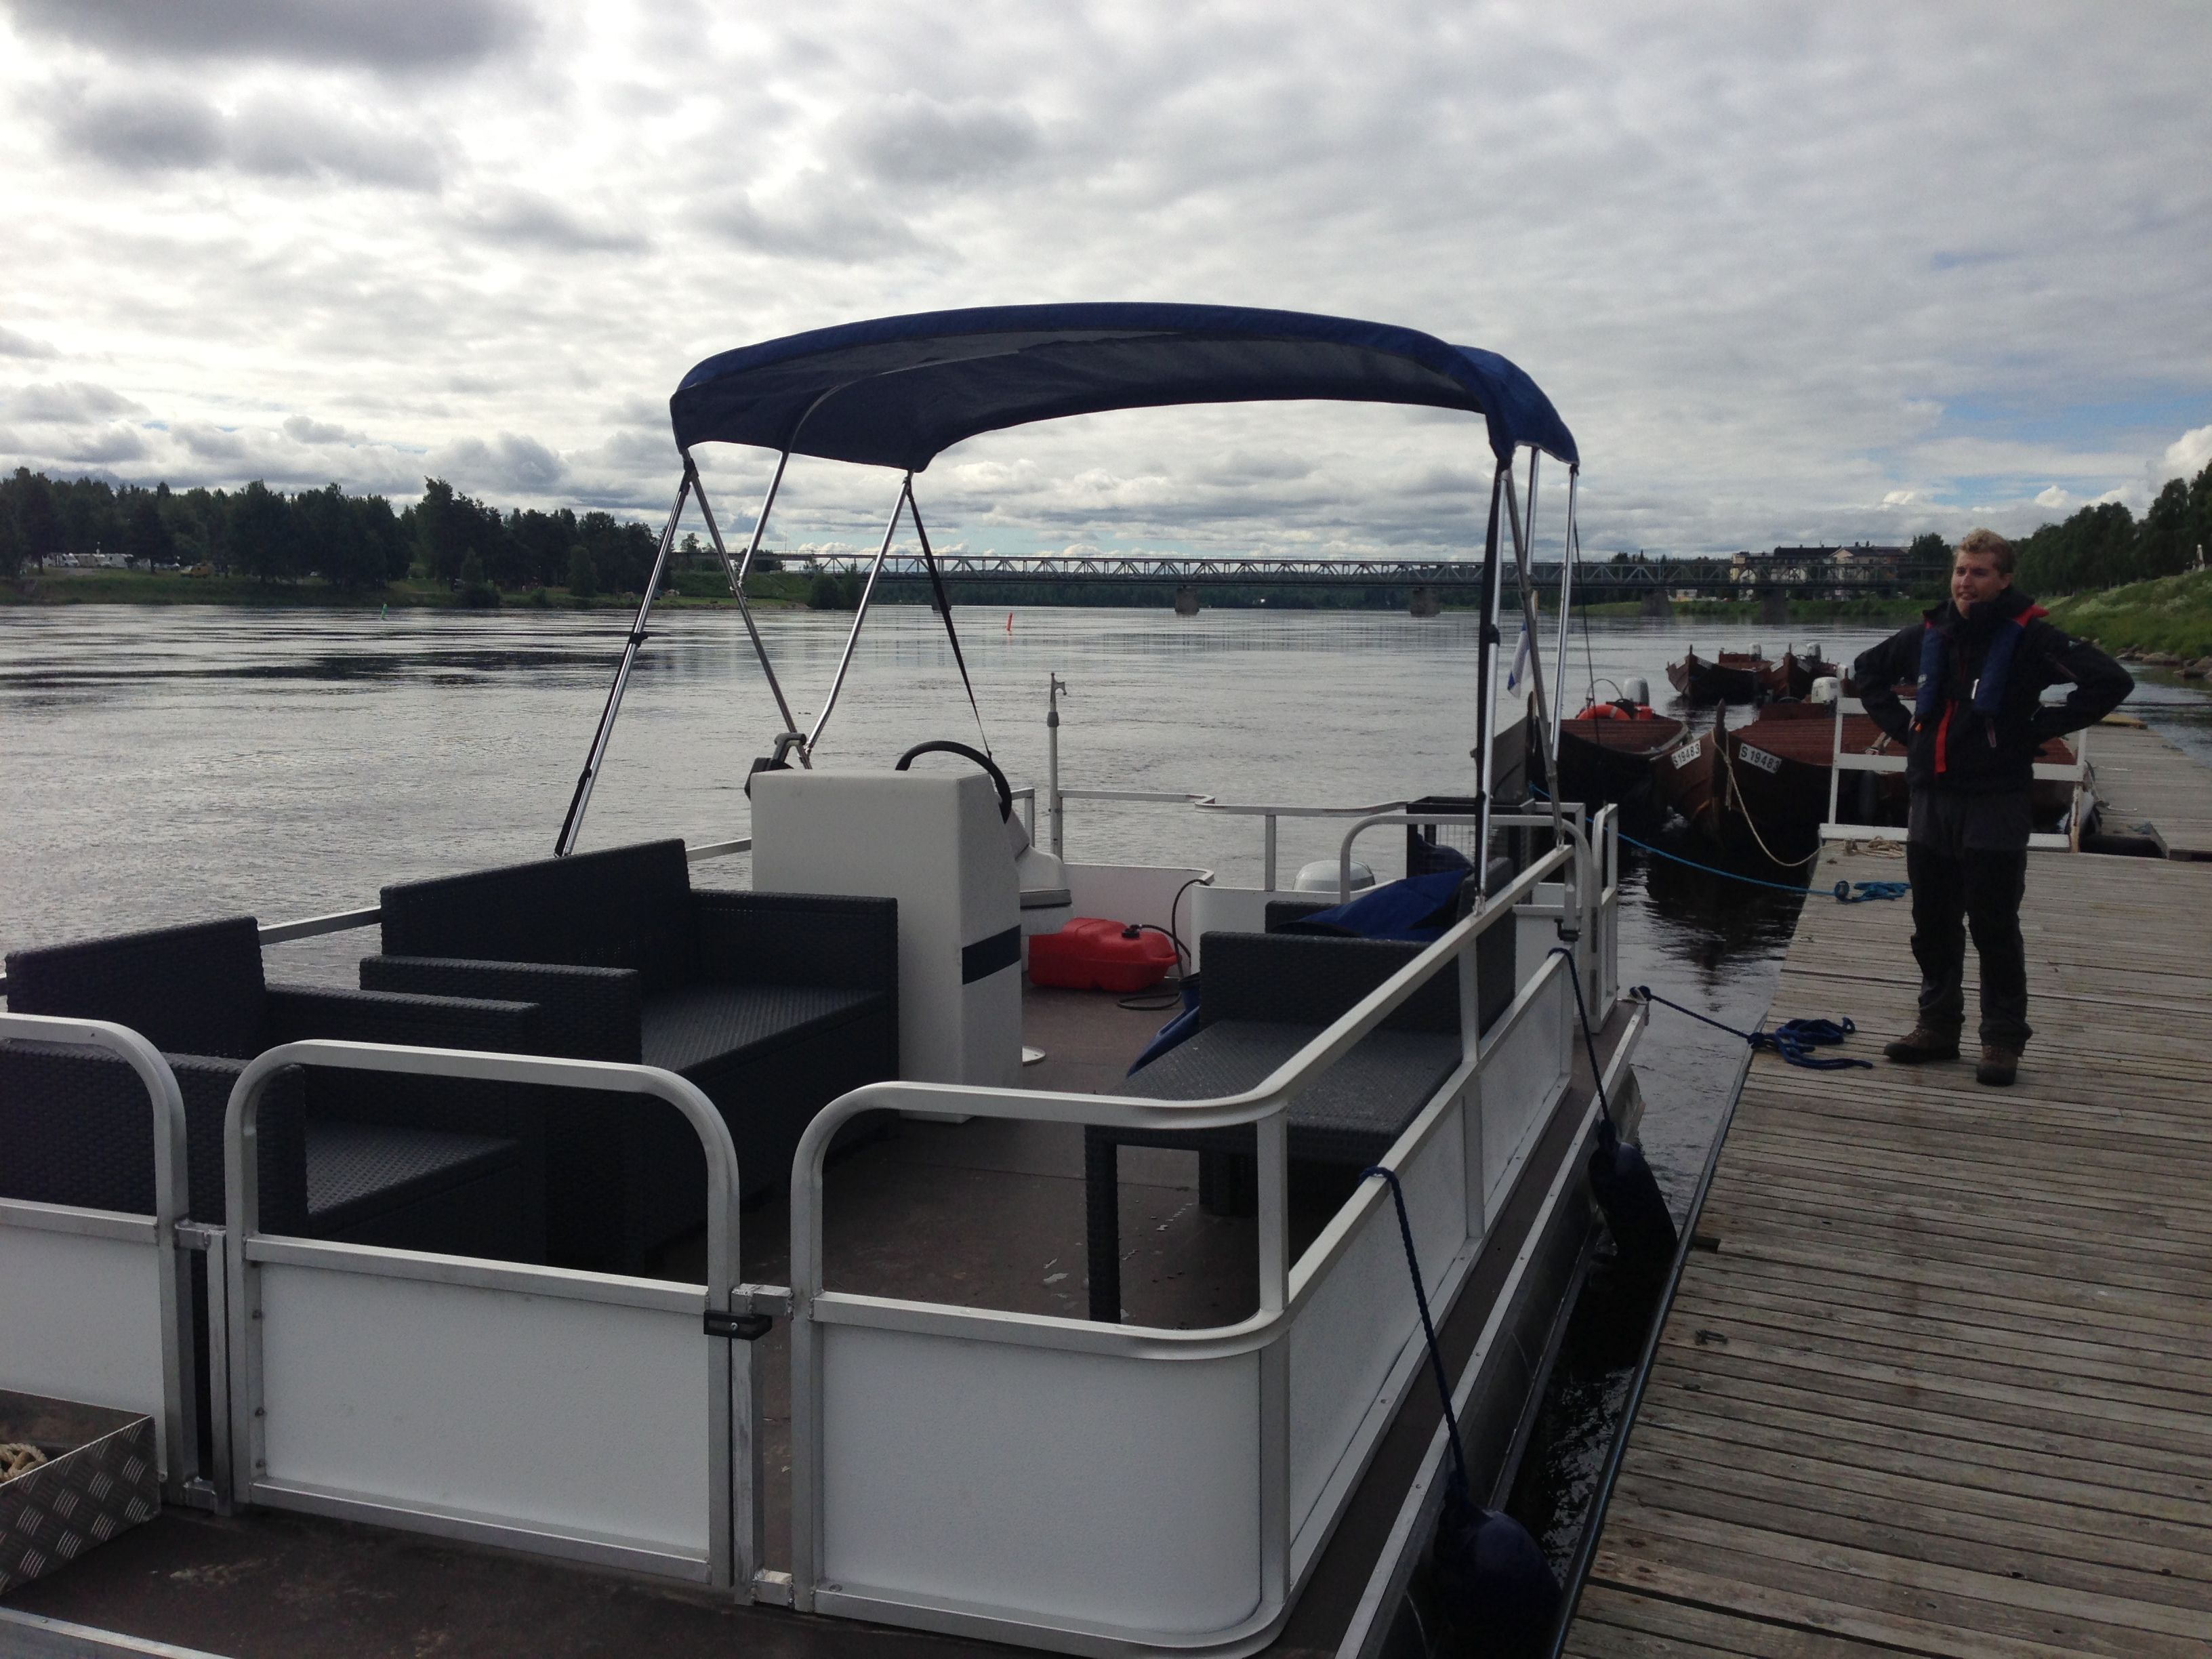 Barca de alquiler - Navega por los ríos de Rovaniemi a tu aire